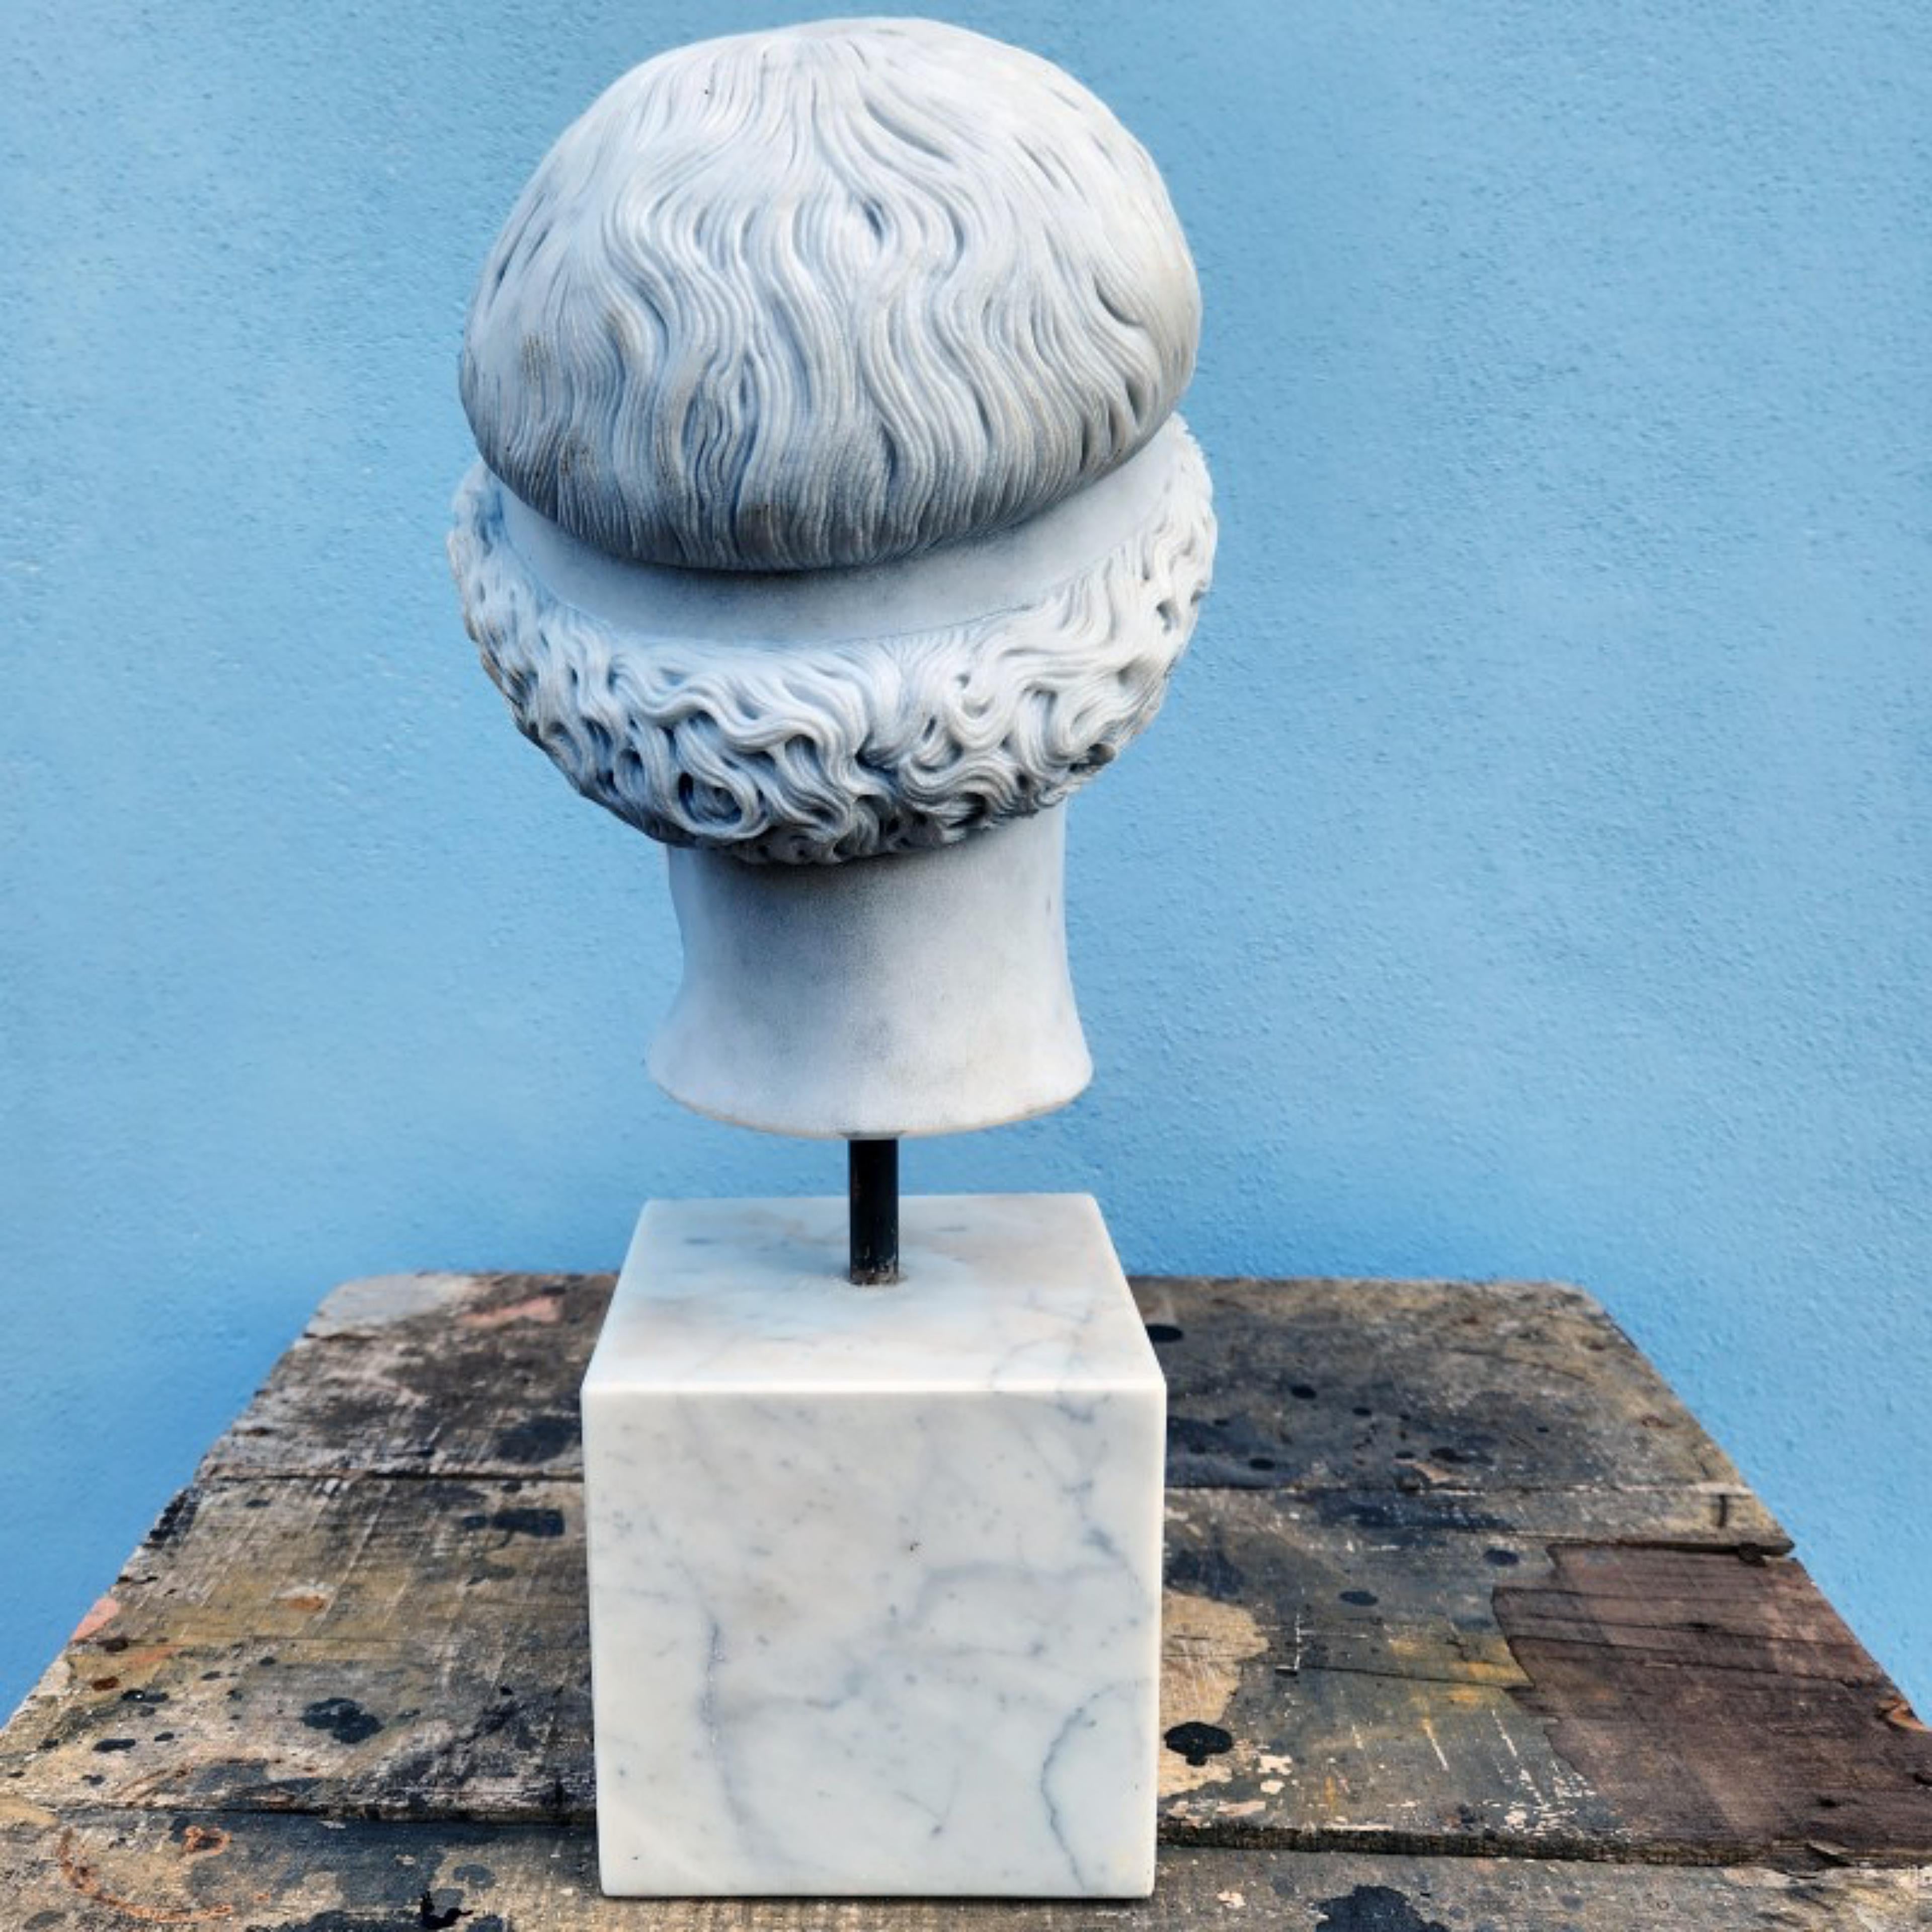 Importante Sculpture Italienne Unique Atena LEMNIA EN MARBRE CARRARA BLANC 19ème Siècle
Italie
Tête en marbre blanc de Carrare, sculptée par nos soins à la main à l'aide de la 